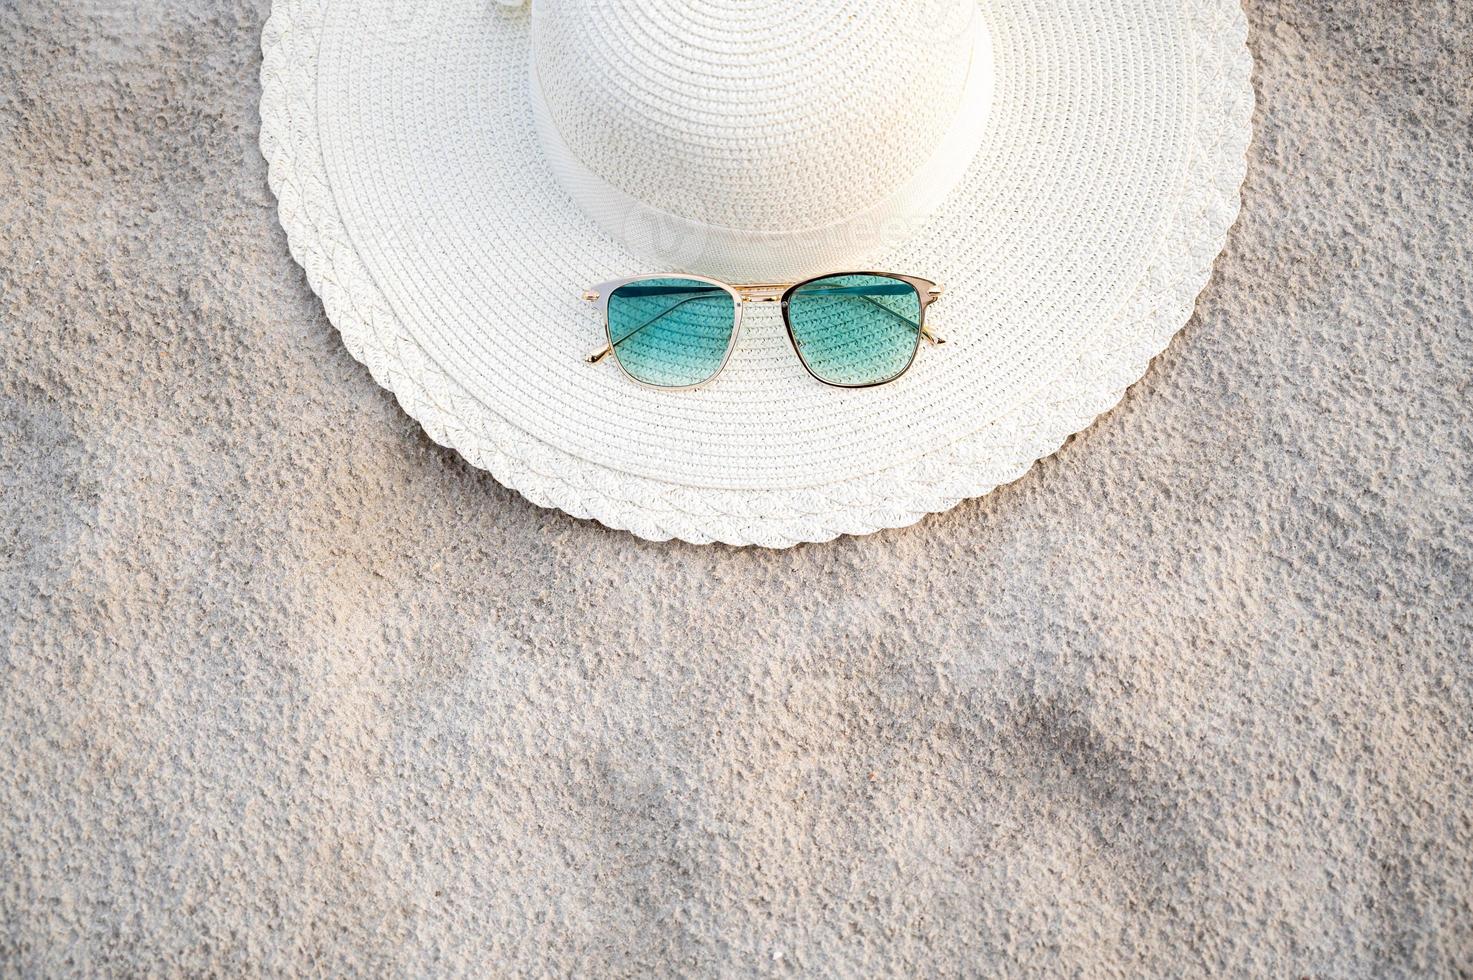 Hüte und Brillen befinden sich an einem klaren Tag am Meer foto